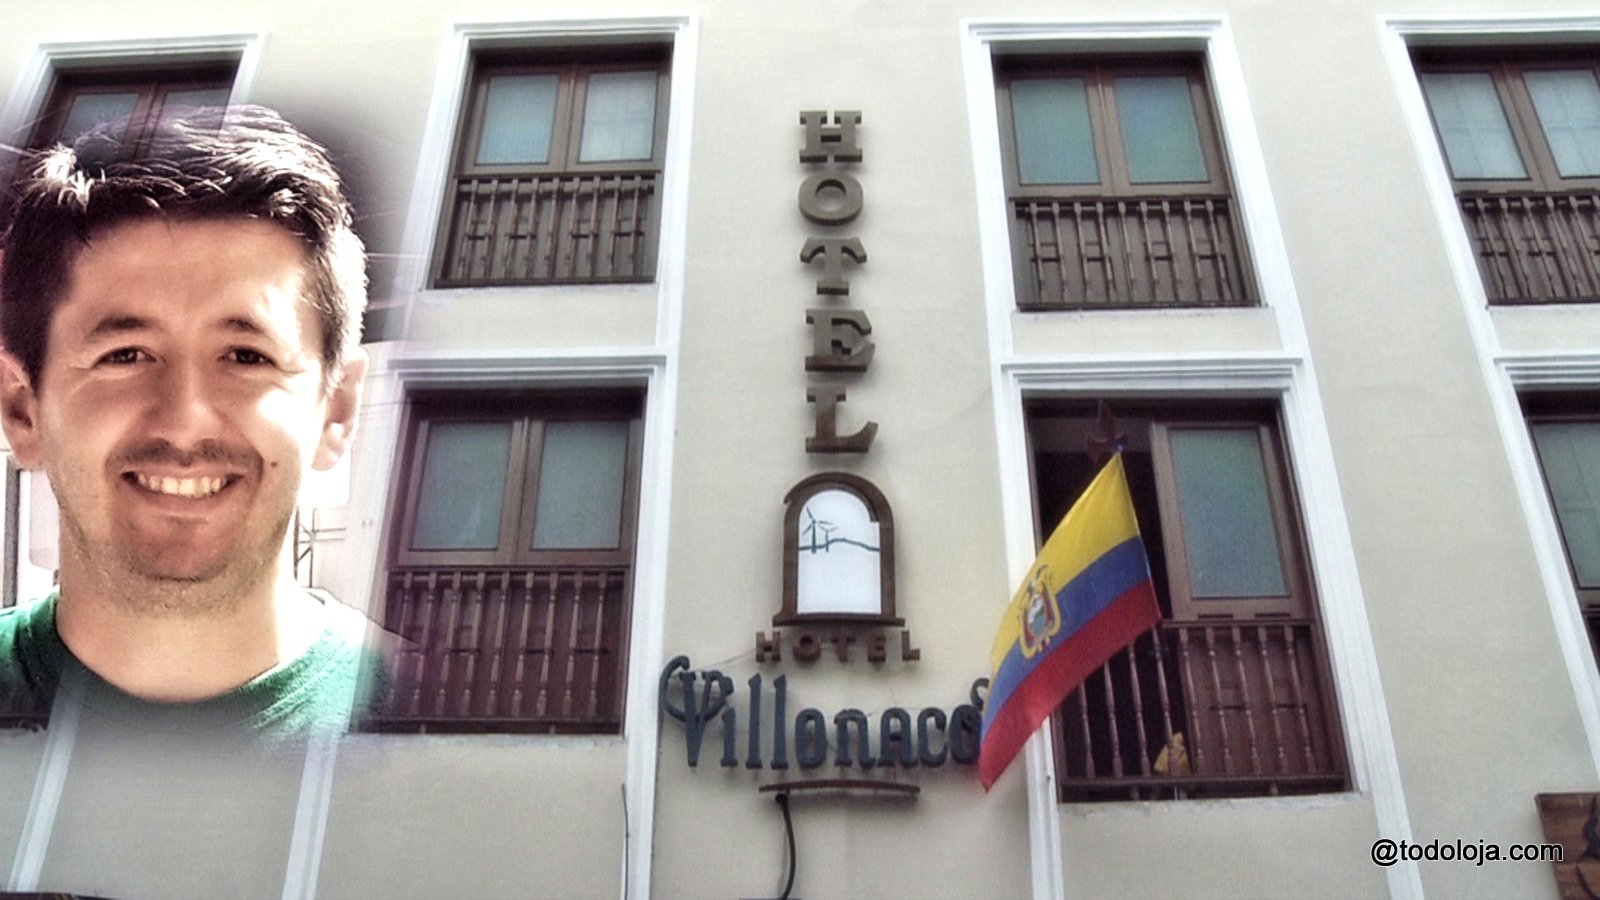 Hotel Villonaco  – Su hogar en Loja Ecuador